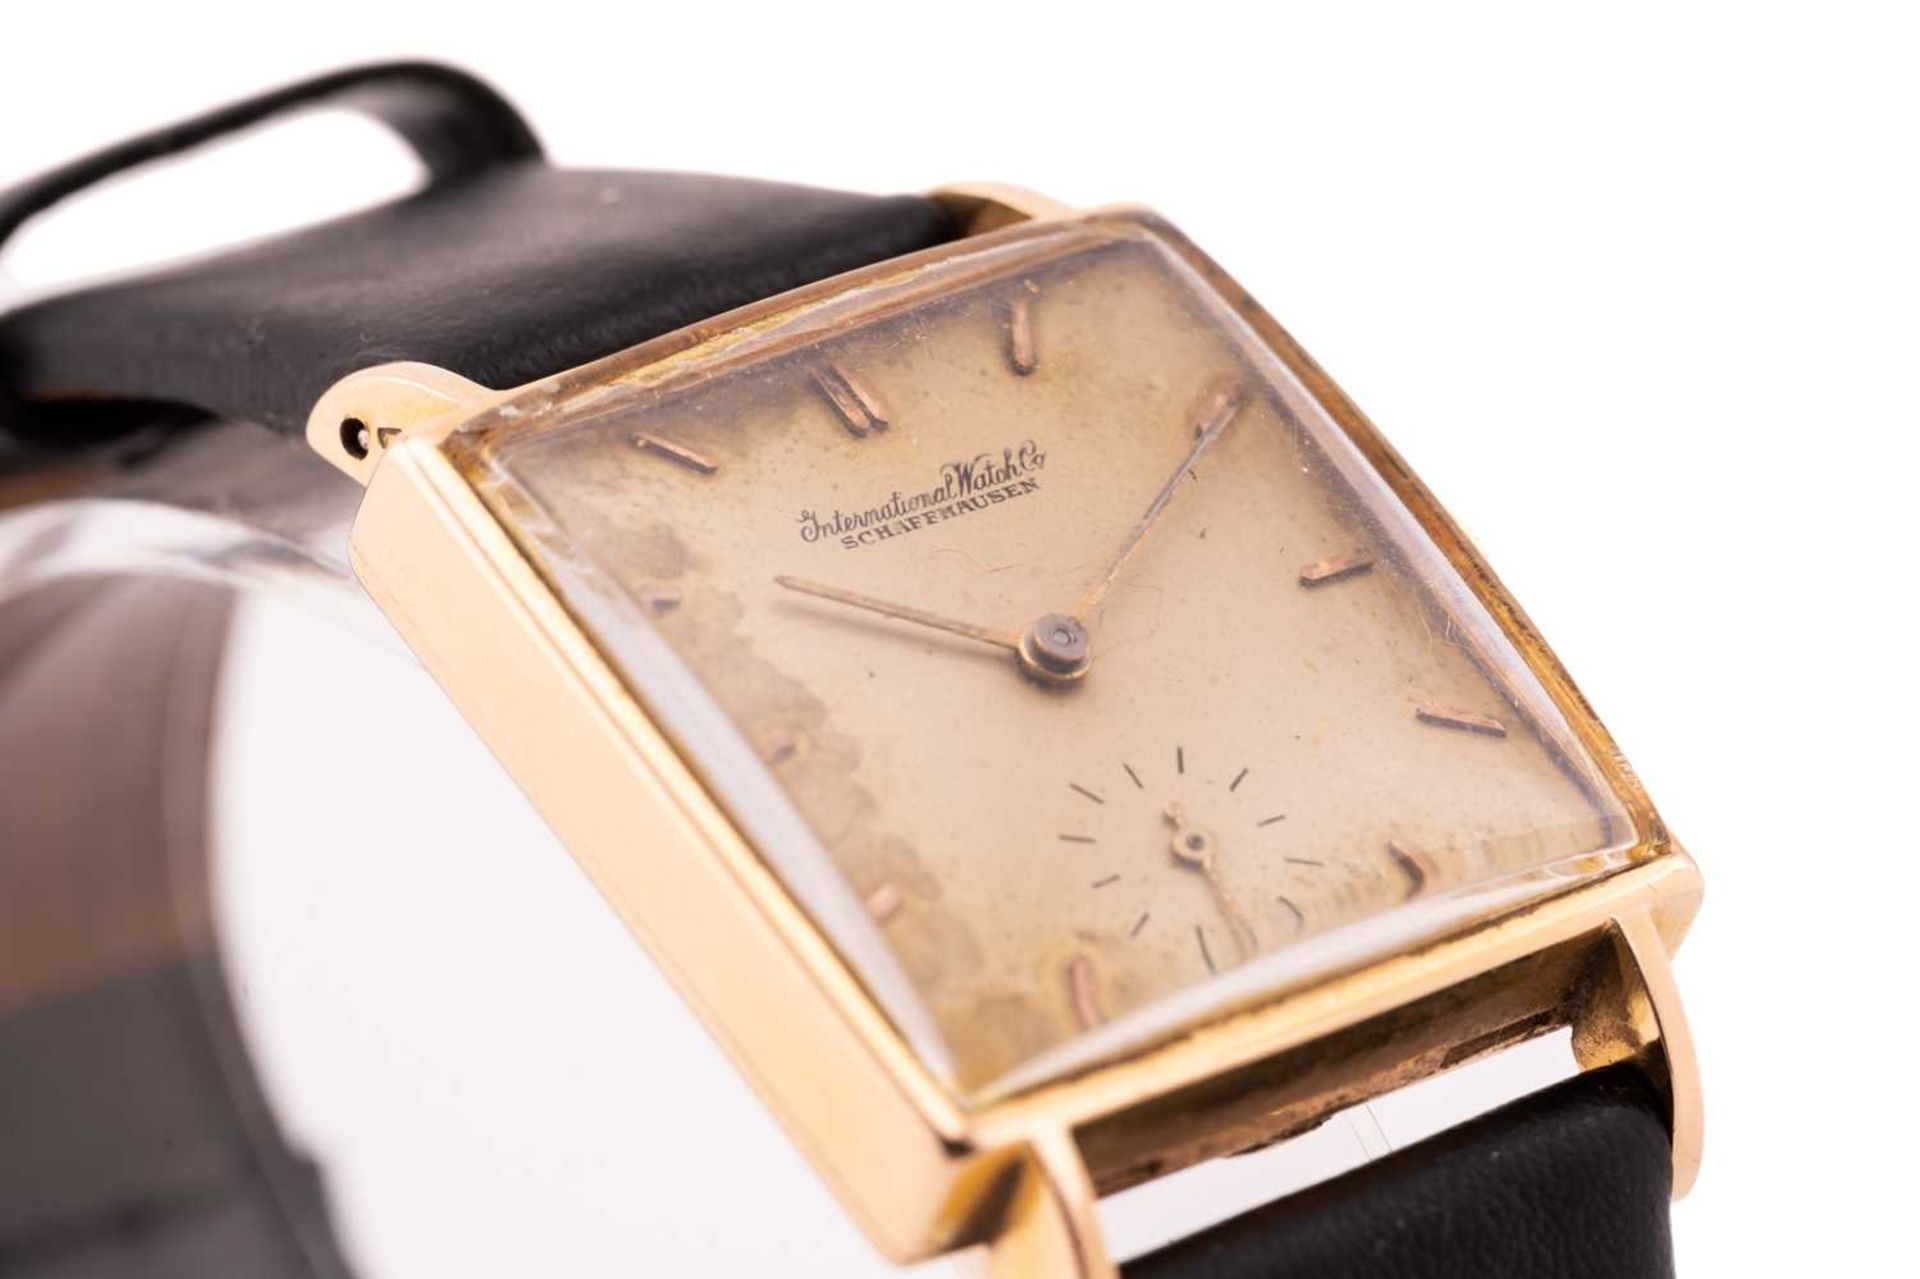 An International Watch Co. IWC wristwatch, featuring a swiss-made hand-wound mechanical movement - Bild 6 aus 12